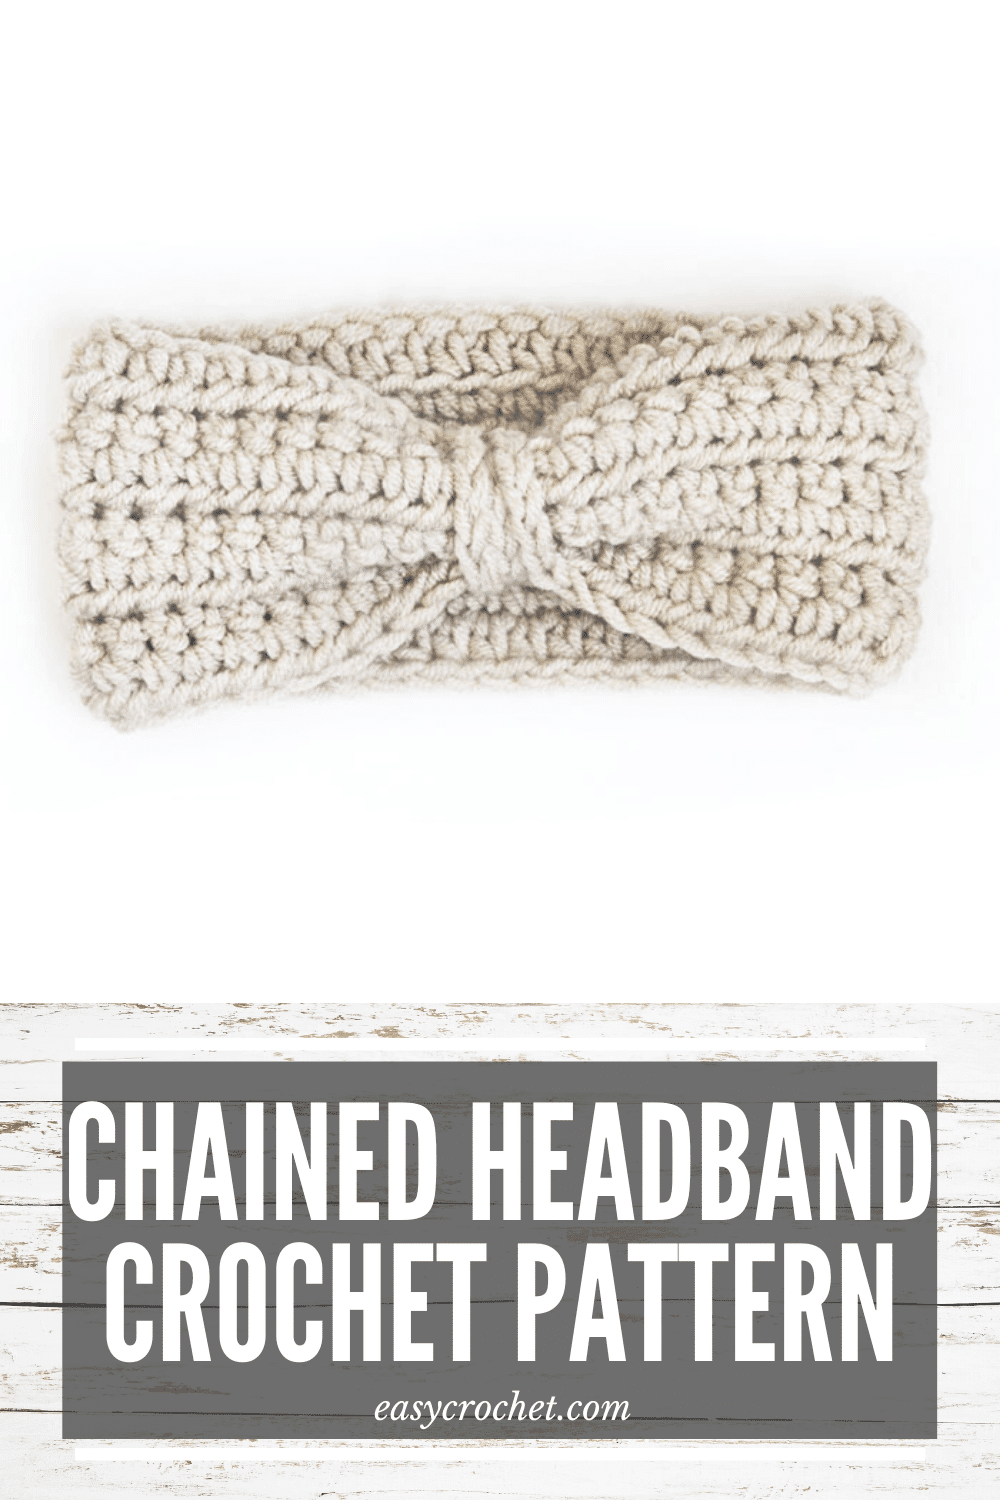 Free crochet ear warmer crochet pattern for an easy to crochet headband. Find this free crochet pattern at easycrochet.com via @easycrochetcom